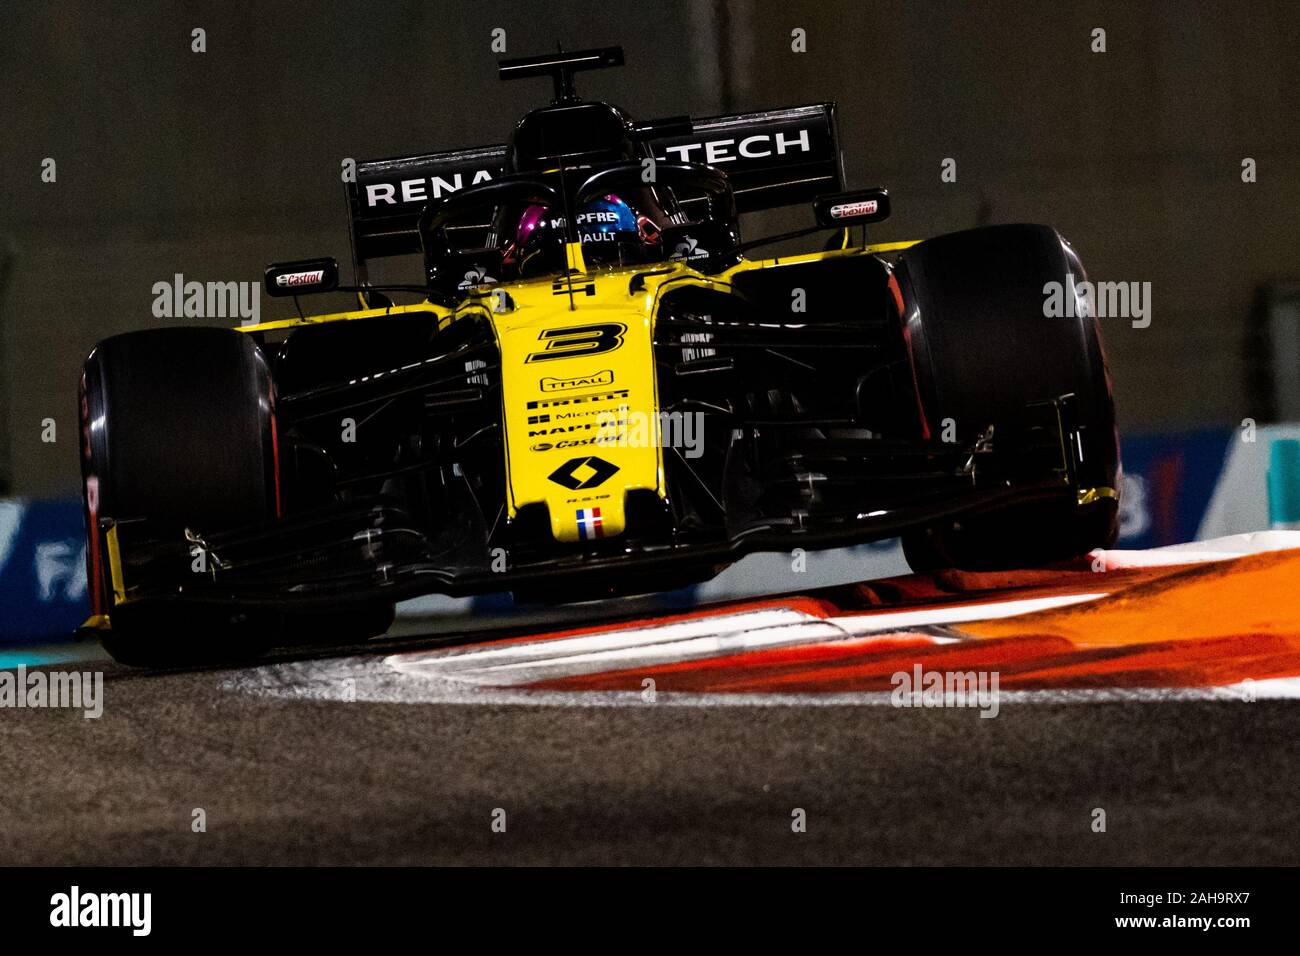 UAE/Abu Dhabi - 29/11/2019 - #3 Daniel RICCIARDO (AUS, Renault Sport F1 Team, R.S. 19) during FP2 ahead of qualifying for the Abu Dhabi Grand Prix Stock Photo